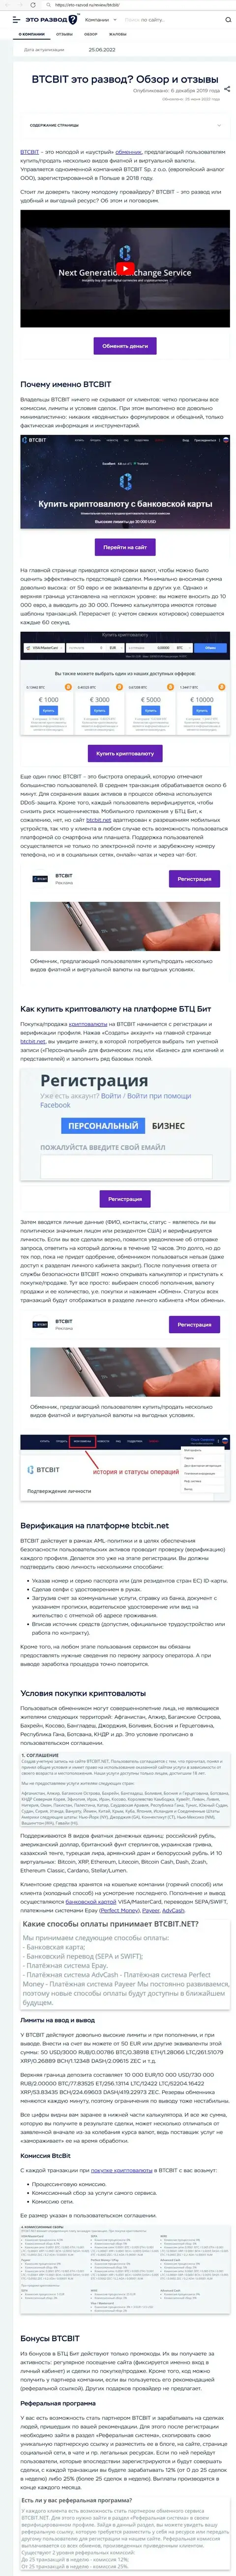 Обзор услуг и условия для совершения сделок обменного онлайн пункта БТКБит в публикации на web-ресурсе Eto Razvod Ru